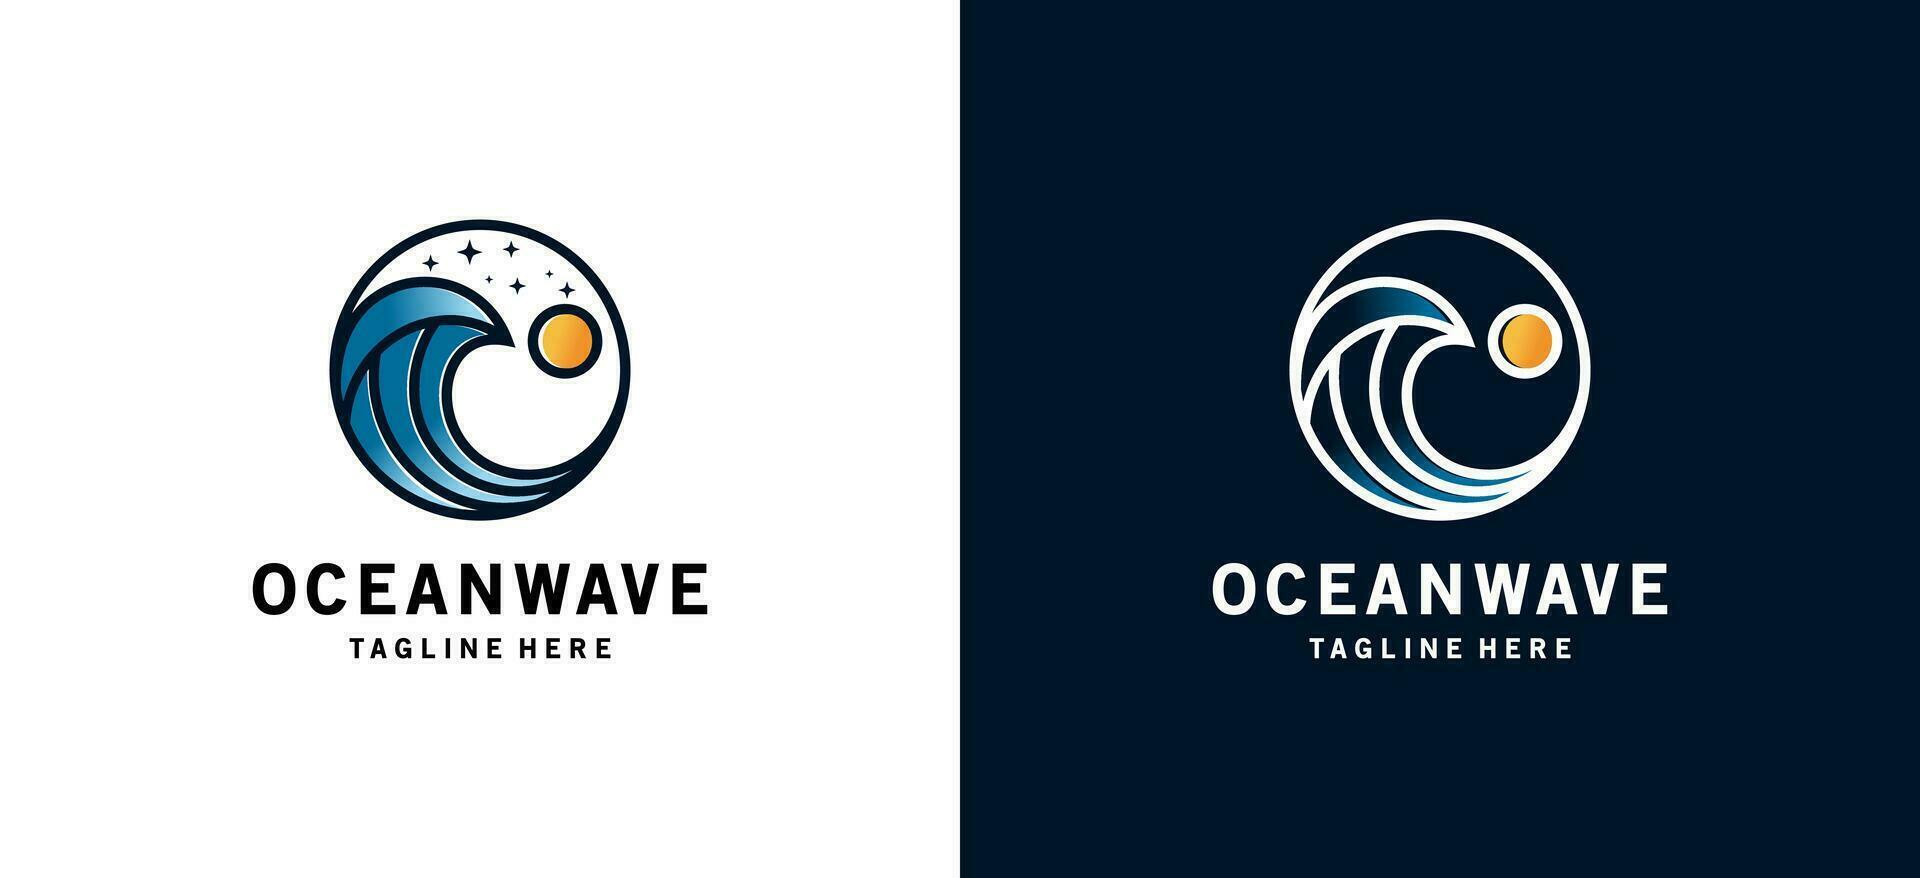 Modern ocean wave symbol icon logo design with creative concept vector